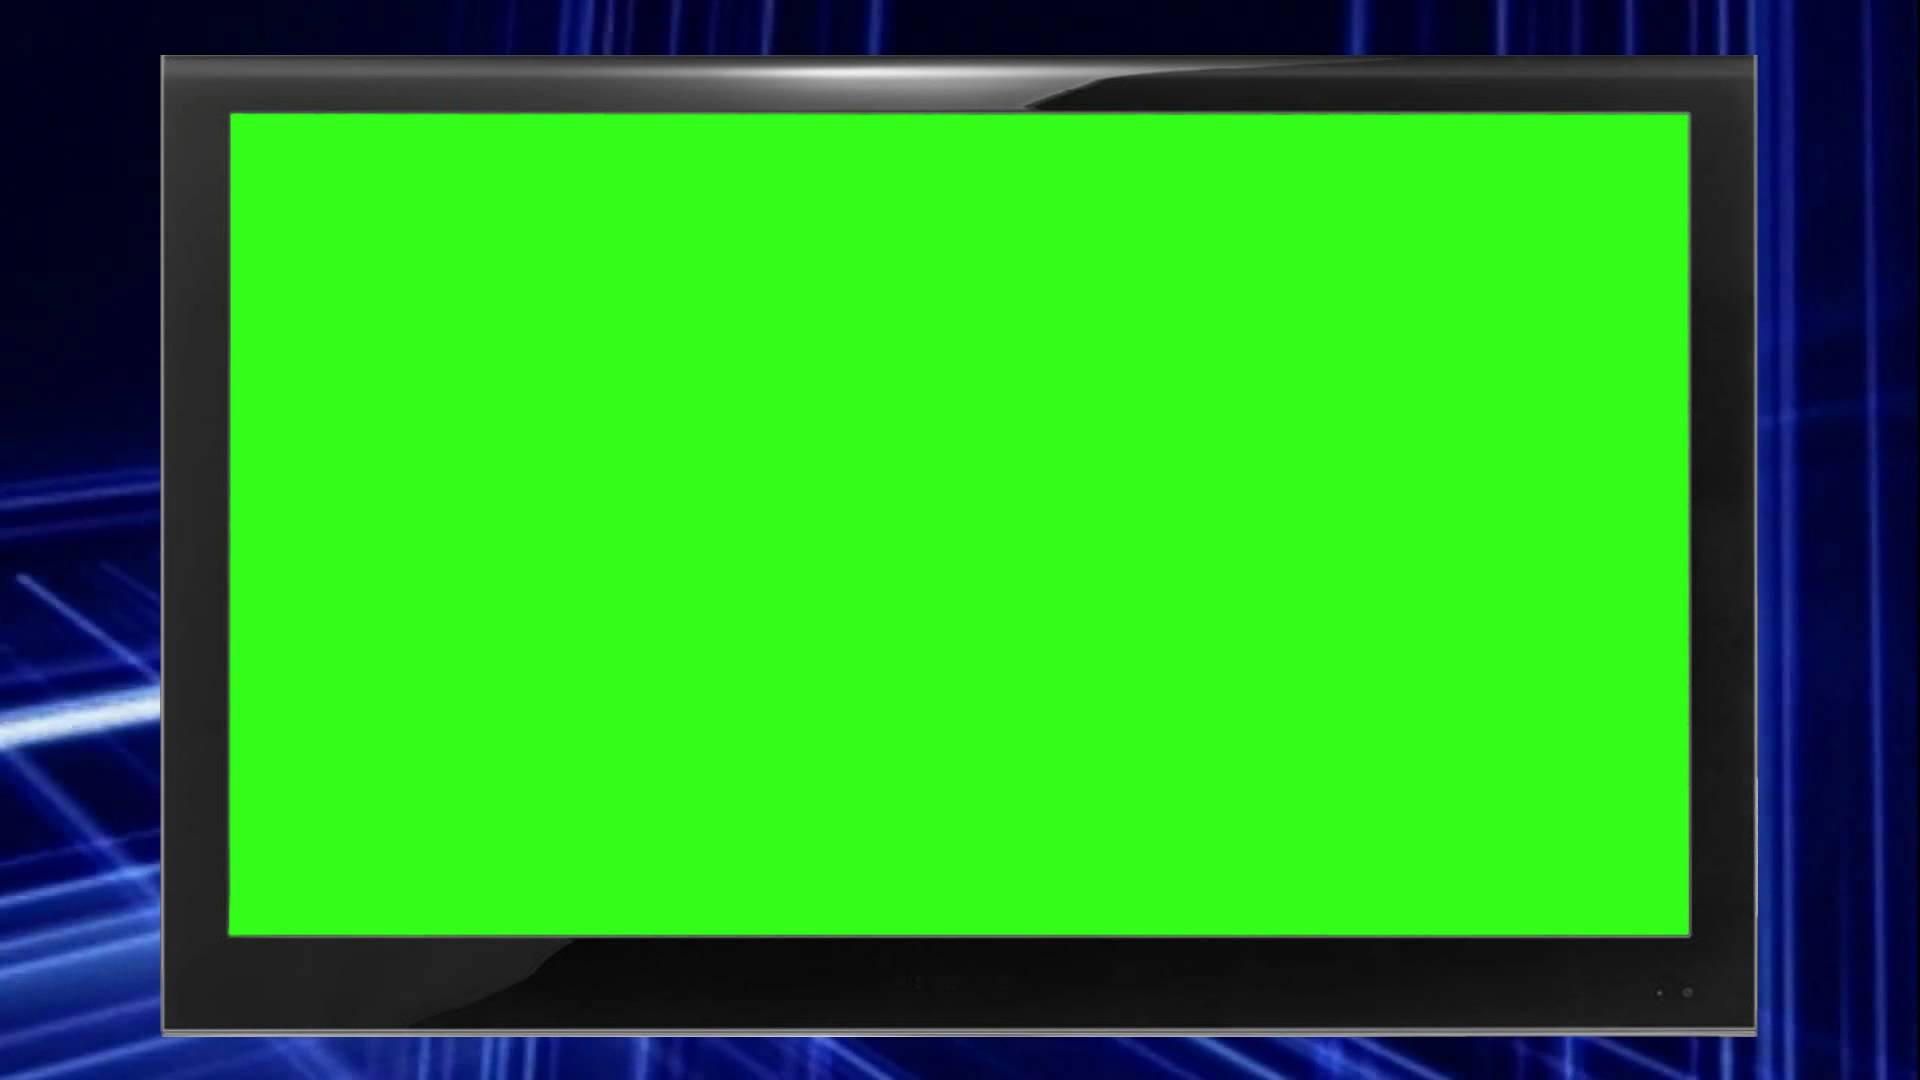 Màn hình xanh là một công cụ hữu ích để tạo ra các hiệu ứng động cho video của bạn. Chúng tôi cung cấp nhiều loại màn hình xanh, giúp cho quá trình chỉnh sửa video của bạn trở nên vô cùng đơn giản và dễ dàng.